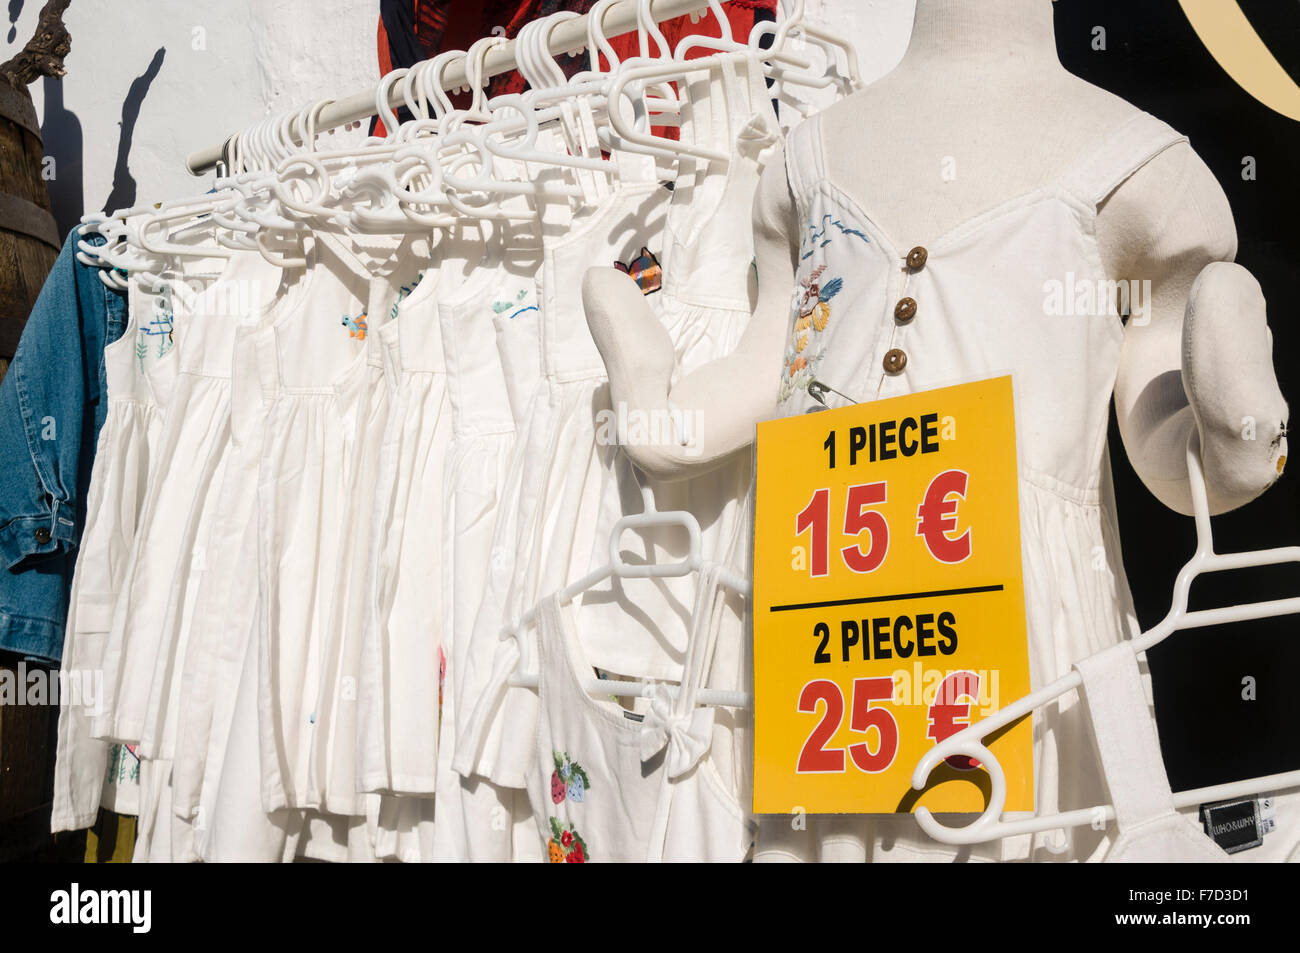 Ropa de algodón natural a la venta en una tienda en Lanzarote Foto de stock